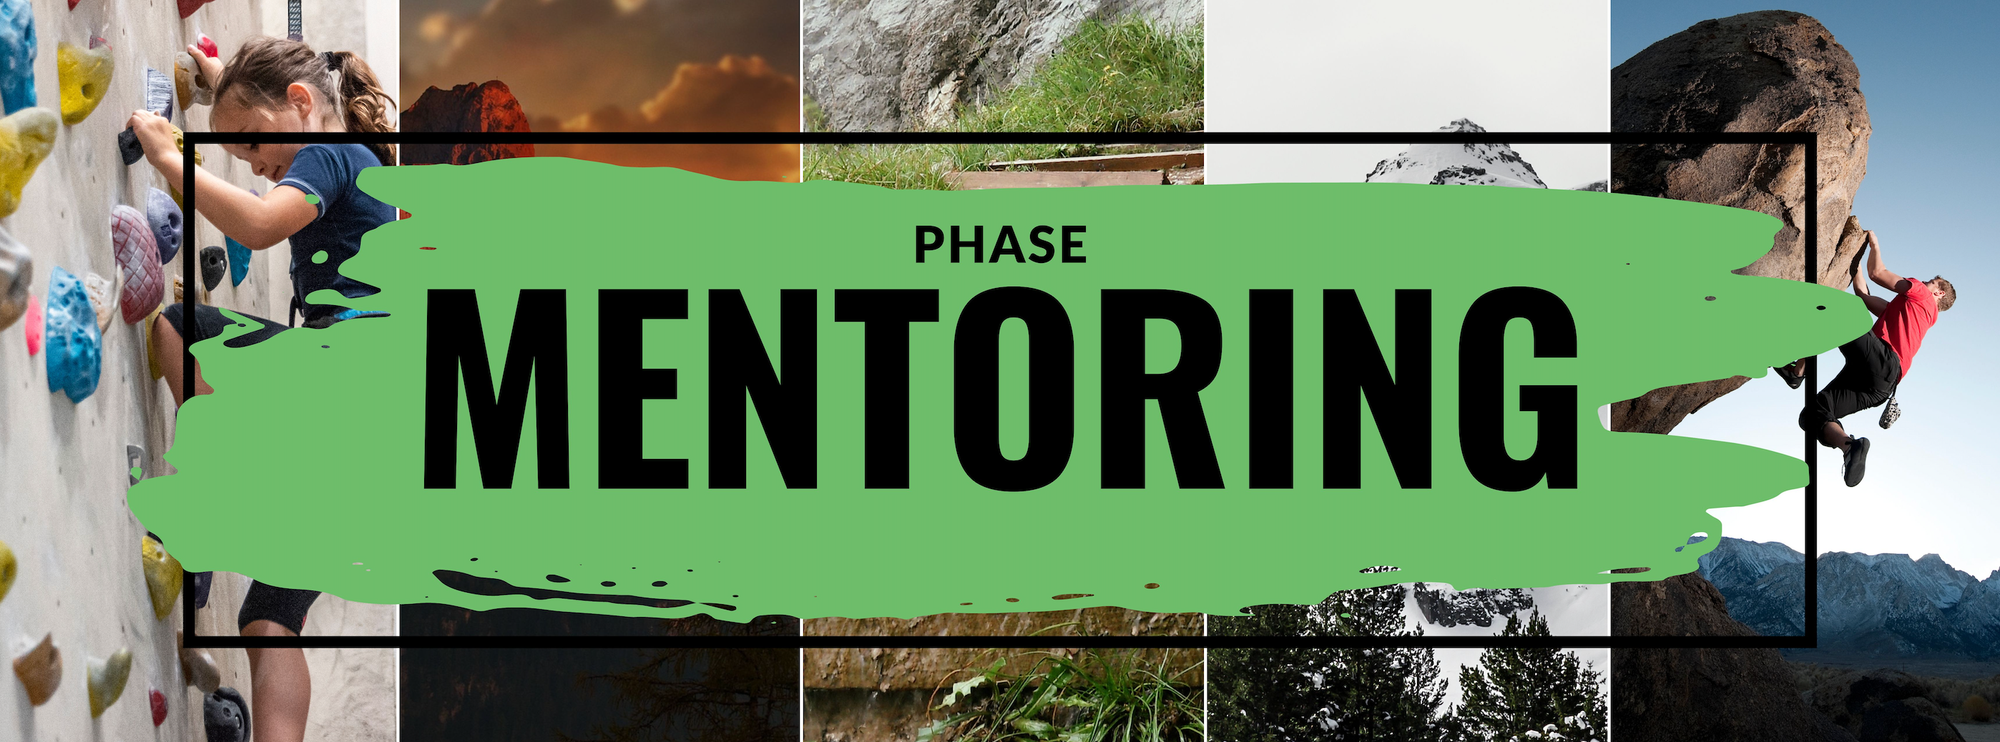 Phase Mentoring